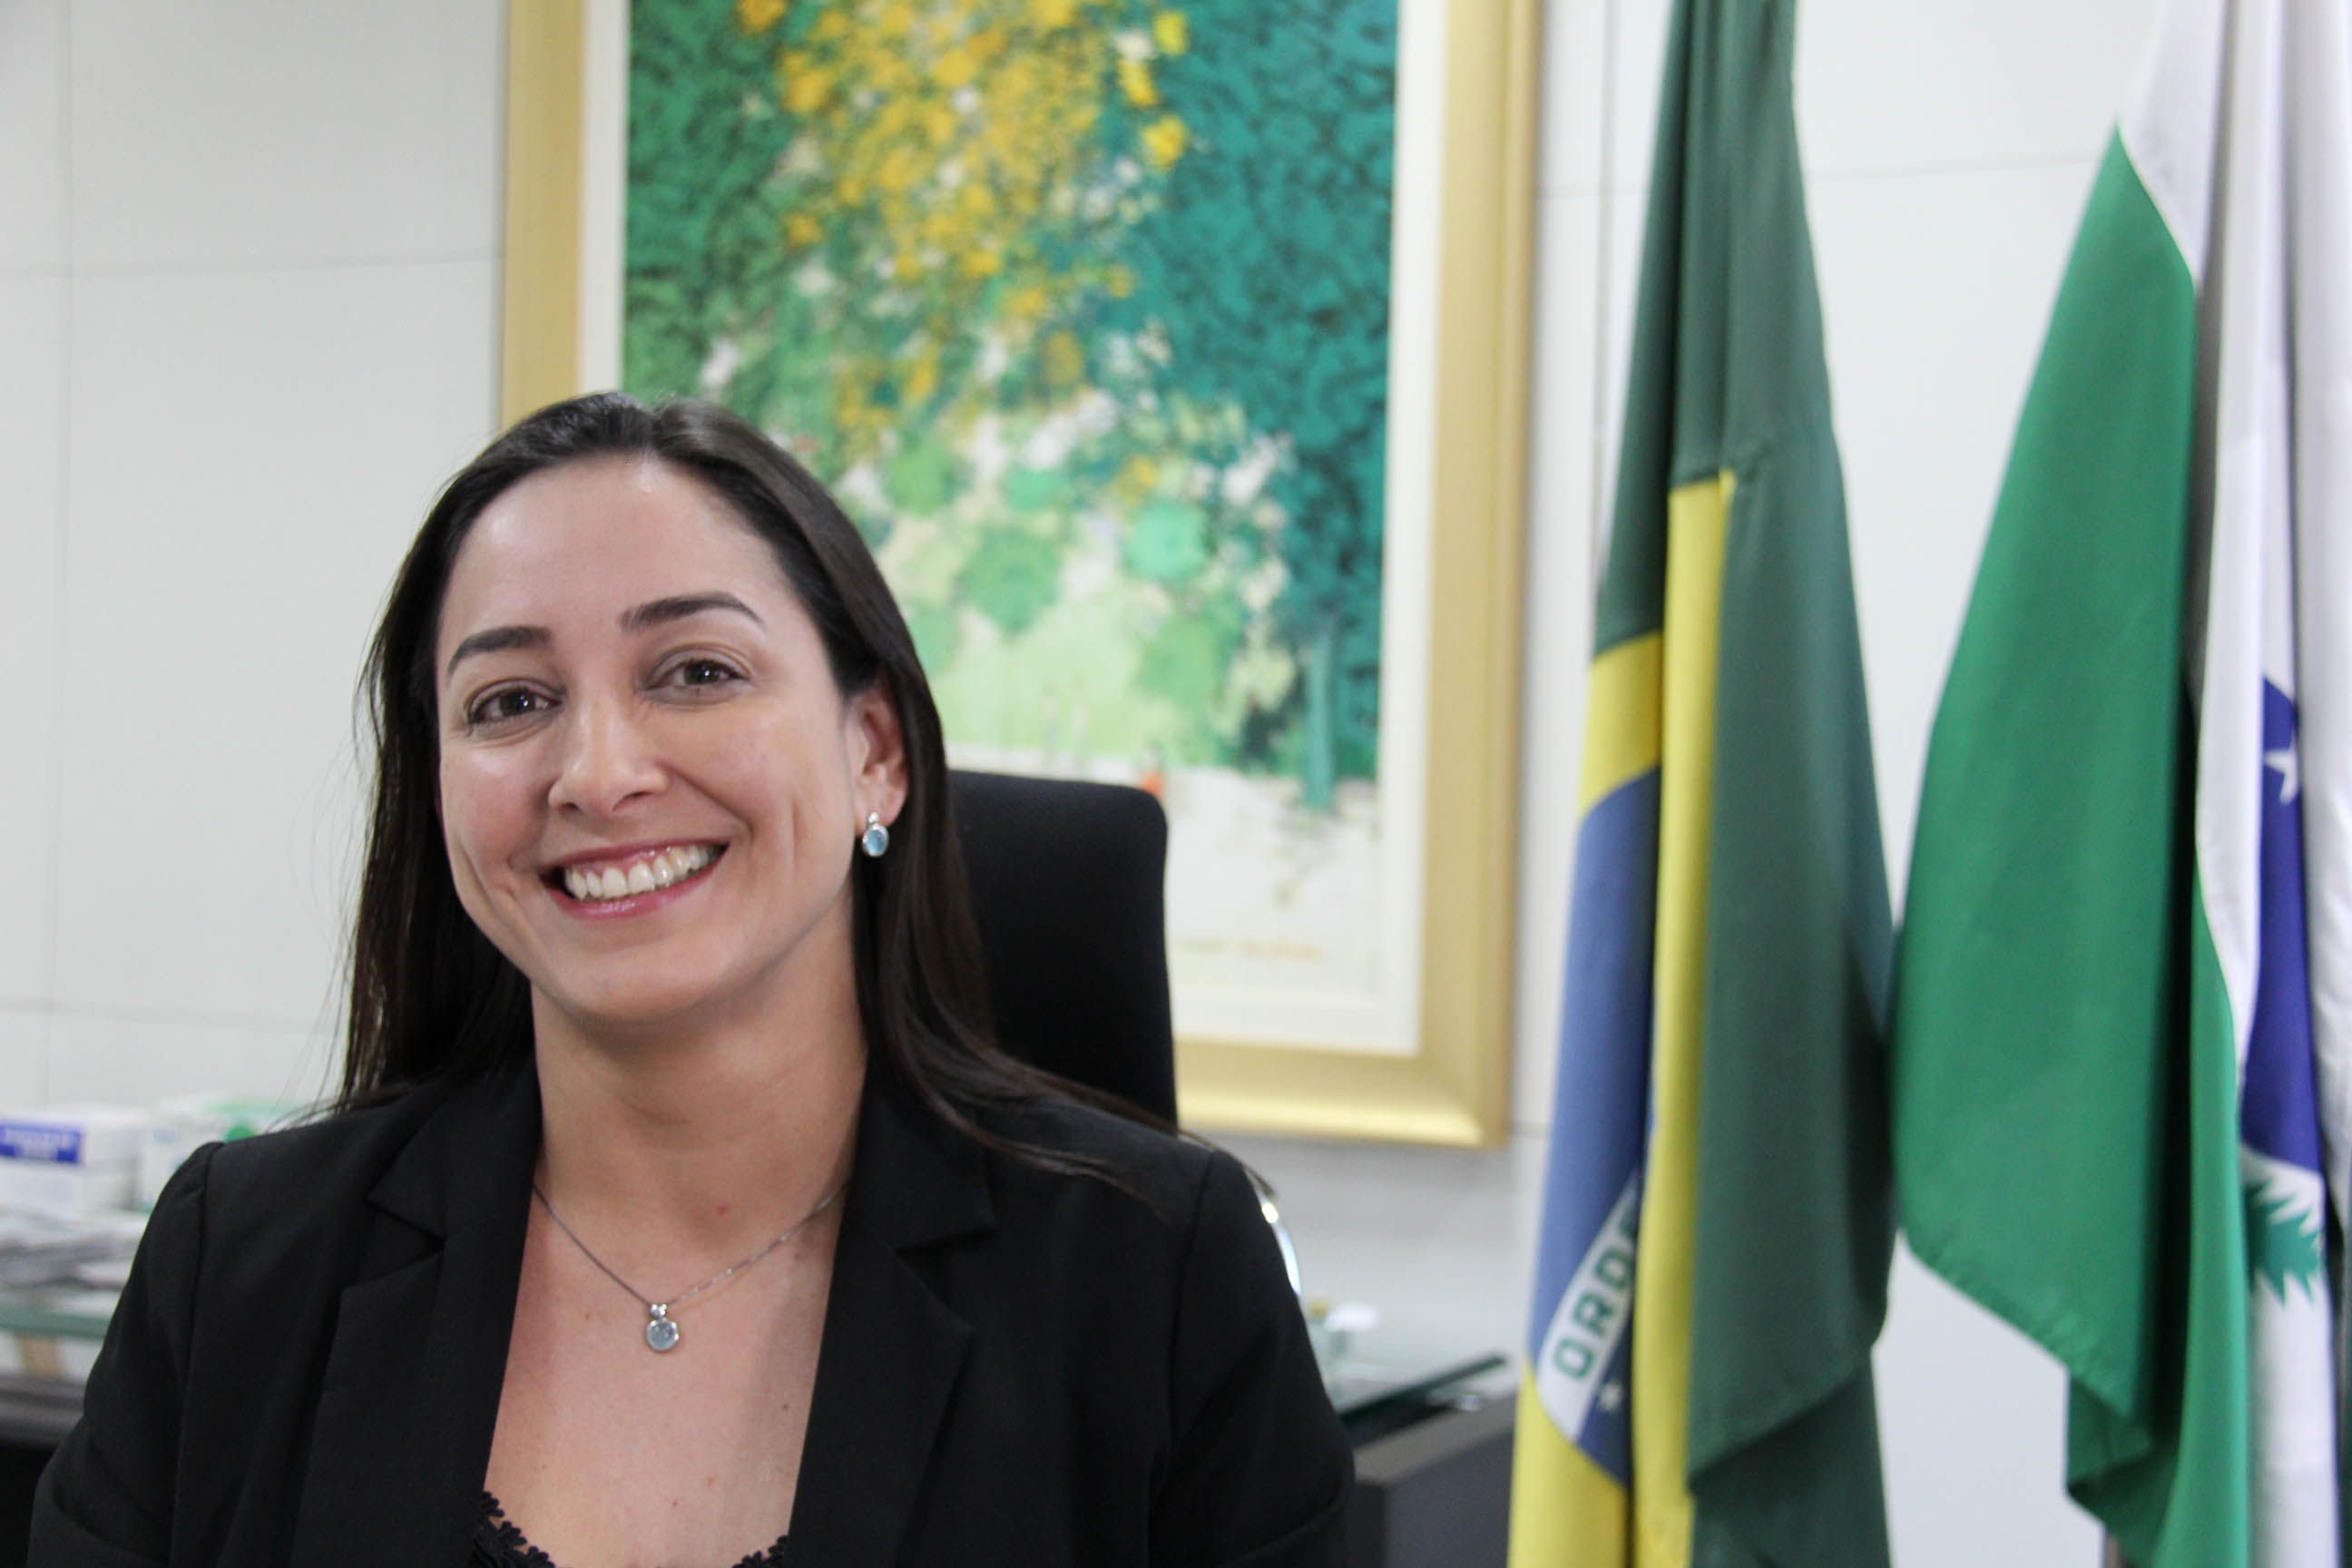 A advogada Luciana Carla da Silva, que era diretora-geral da Secretaria da Administração e da Previdência, vai assumir a Controladoria Geral do Estado (CGE). Foto: SEAP